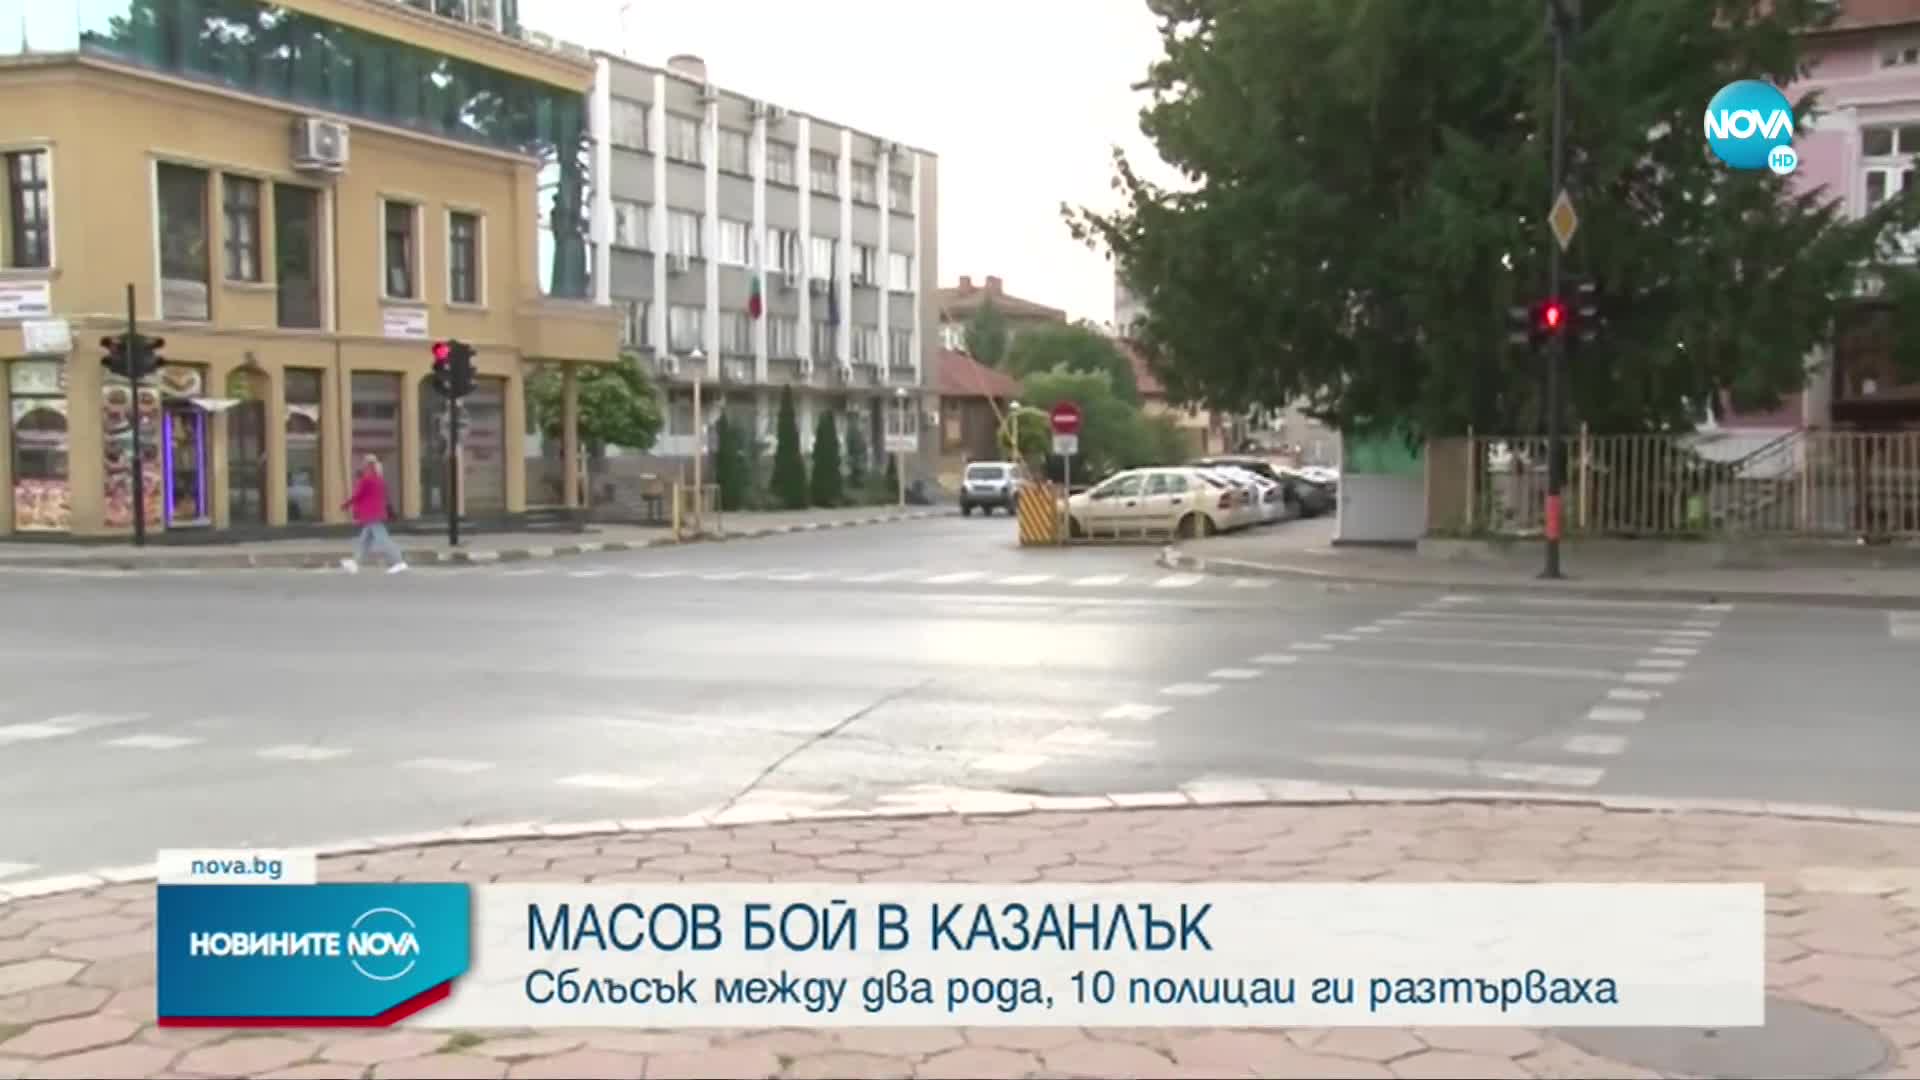 Какви са причините за масовия бой на кръстовище в Казанлък